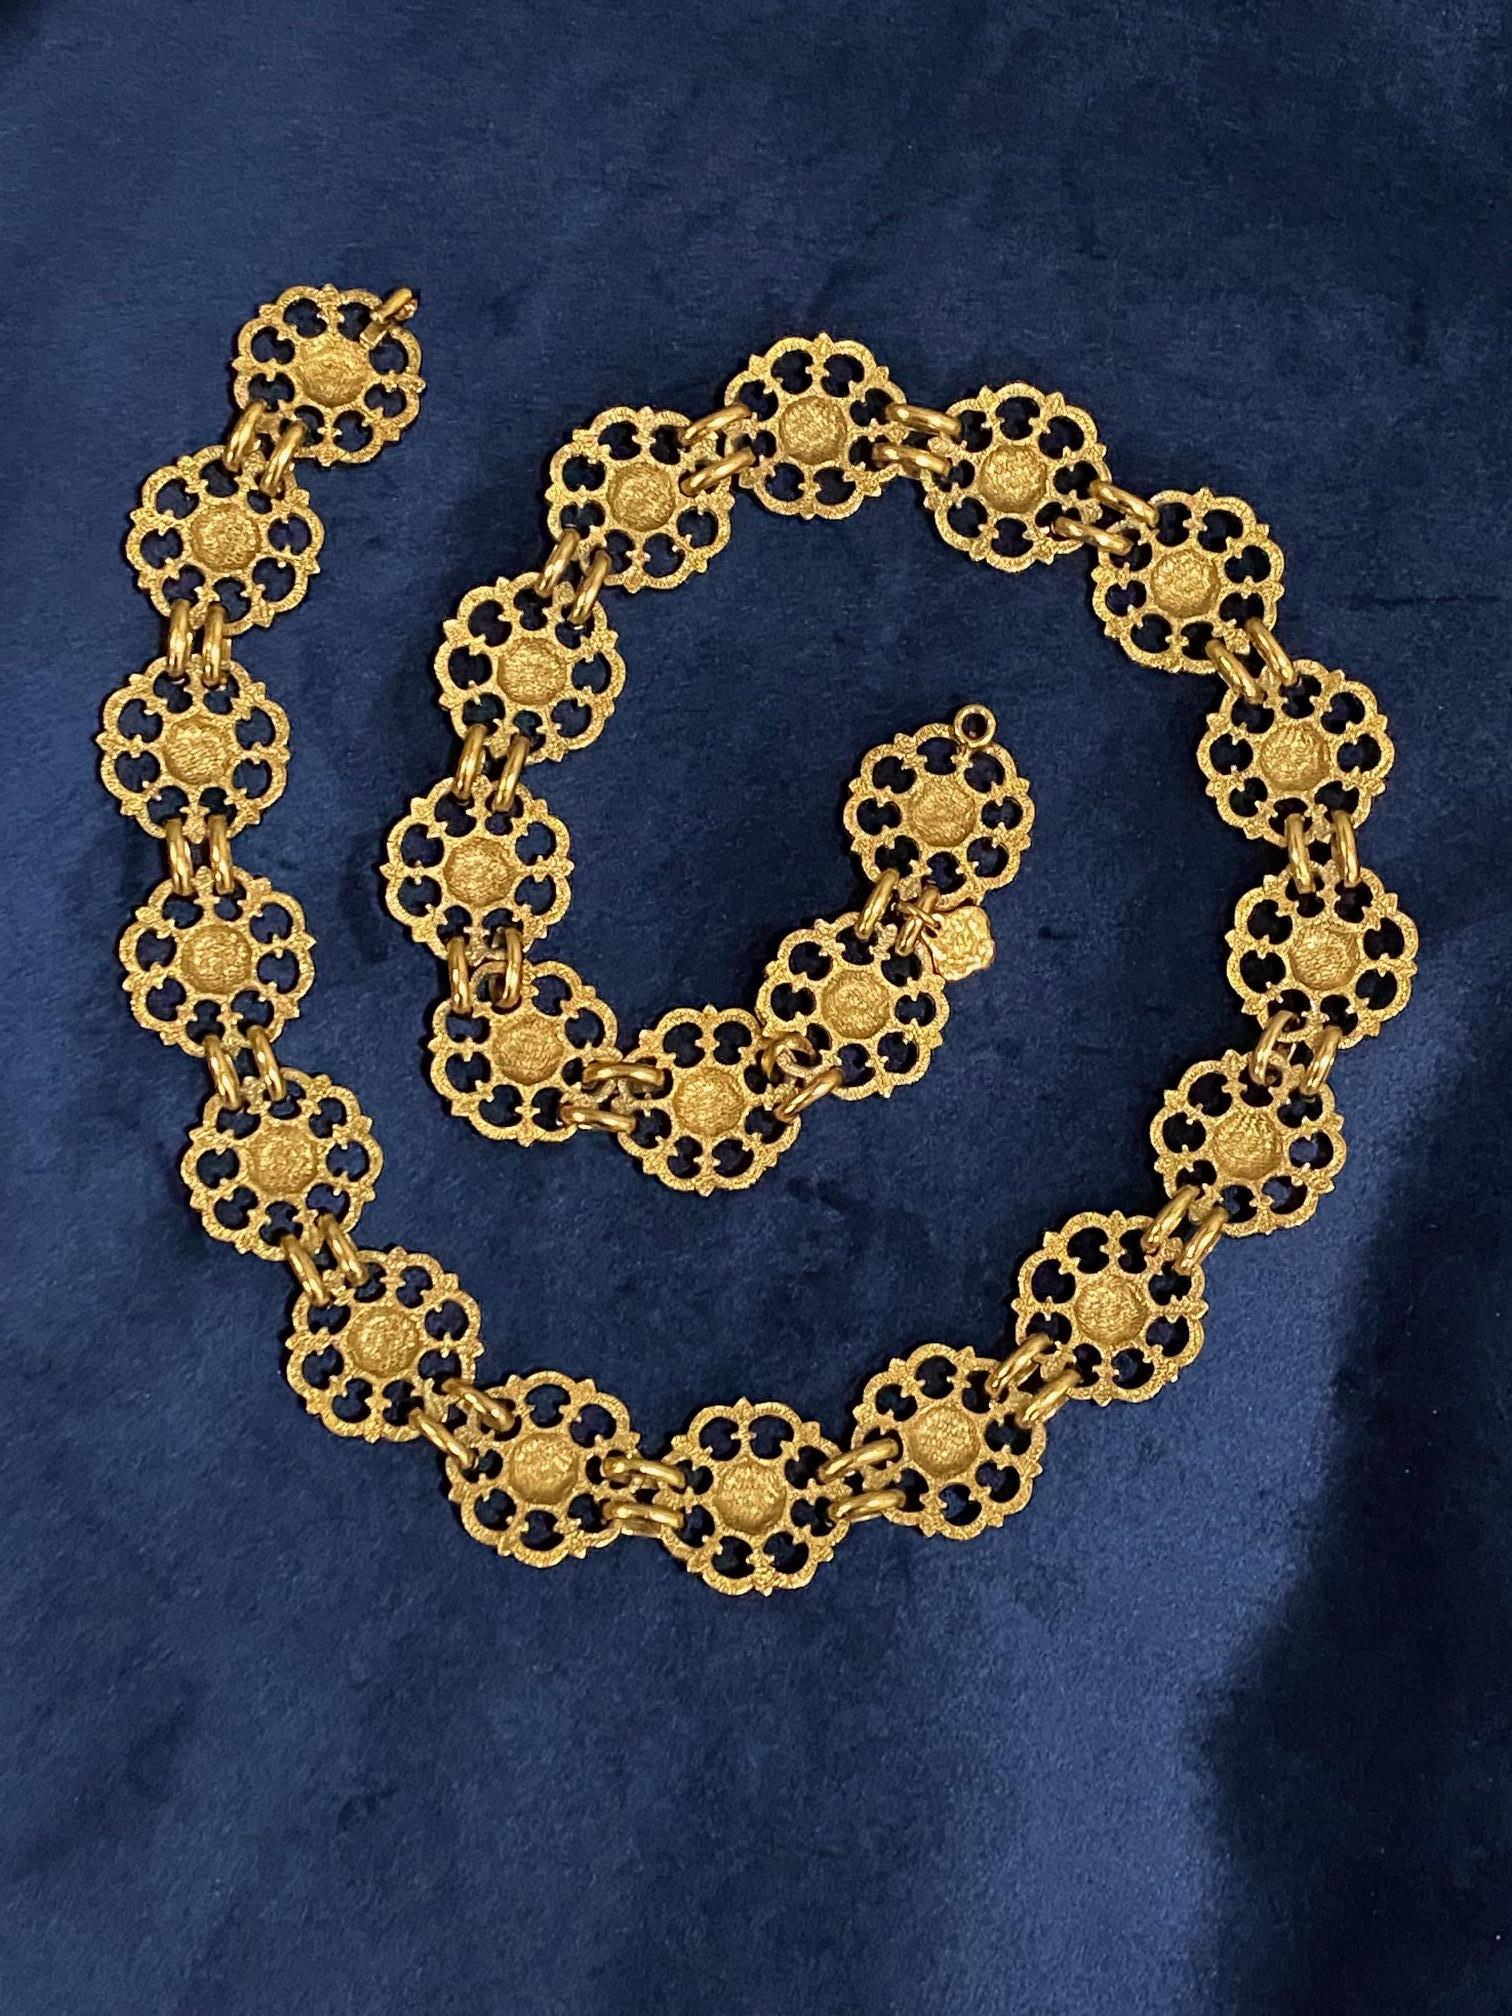 Yves Saint Laurent, Rive Gauche, 1980s Necklace / Belt For Sale 12